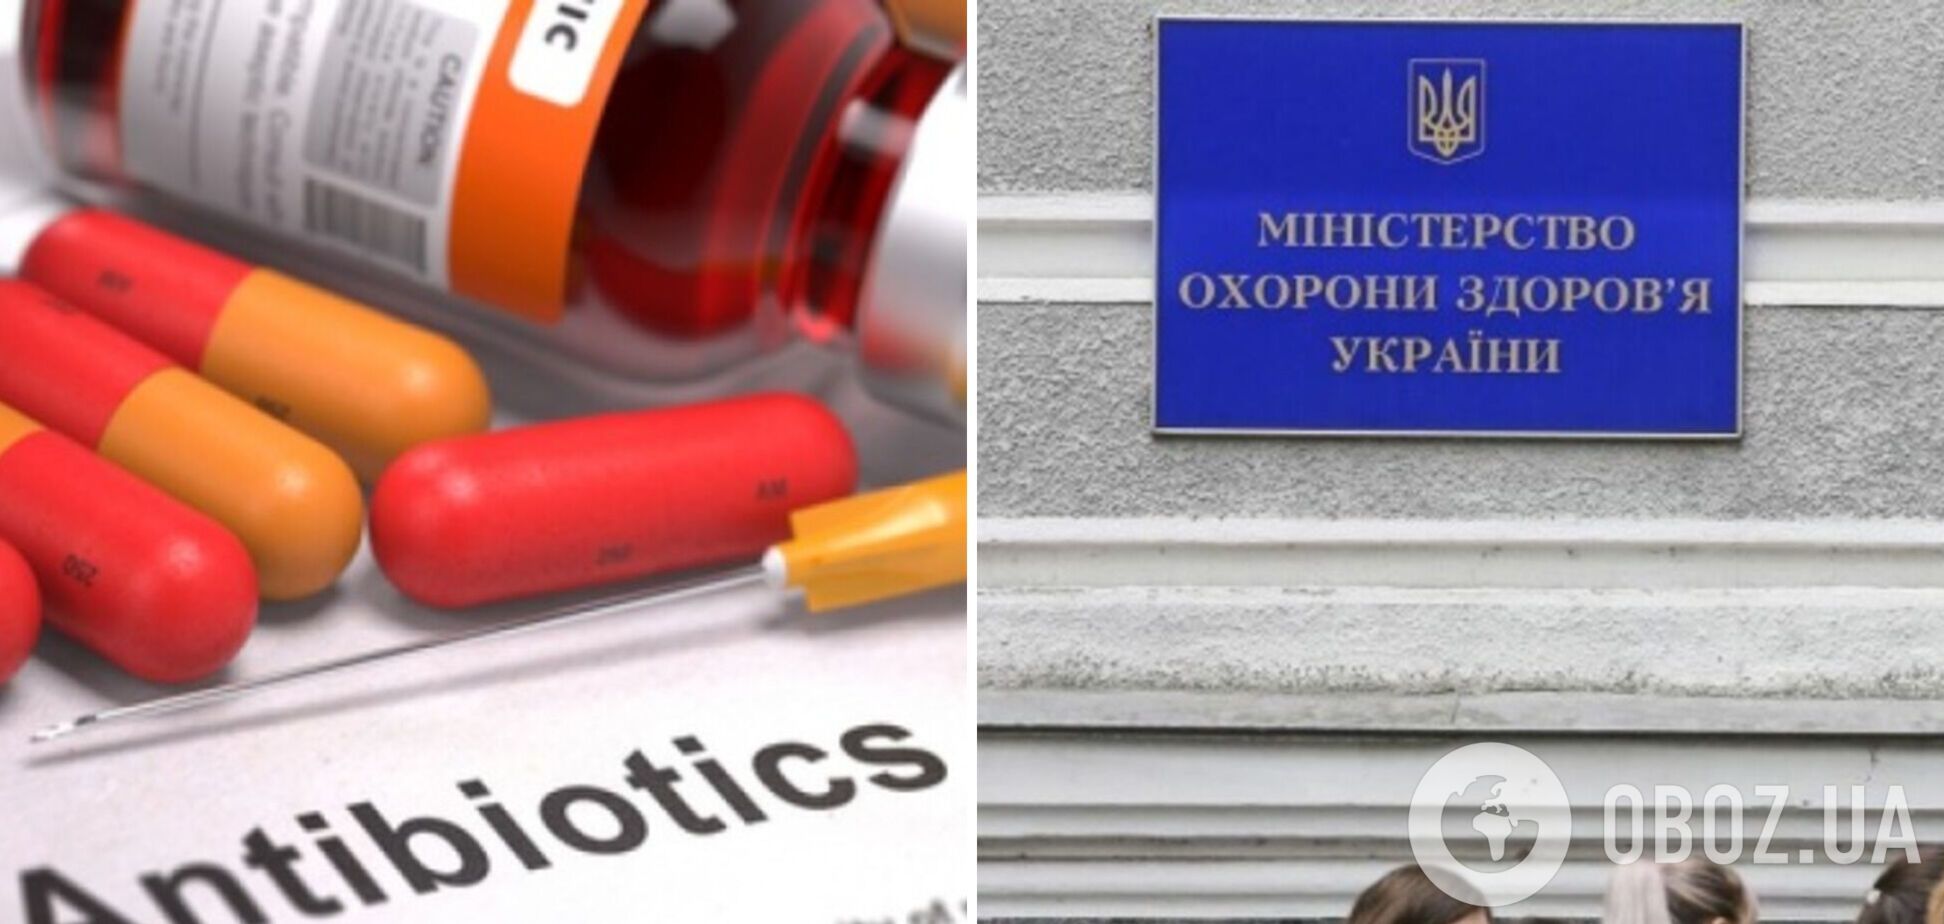 Минздрав: за первые 4 дня в Украине выписали около 10 тысяч электронных рецептов на антибиотики